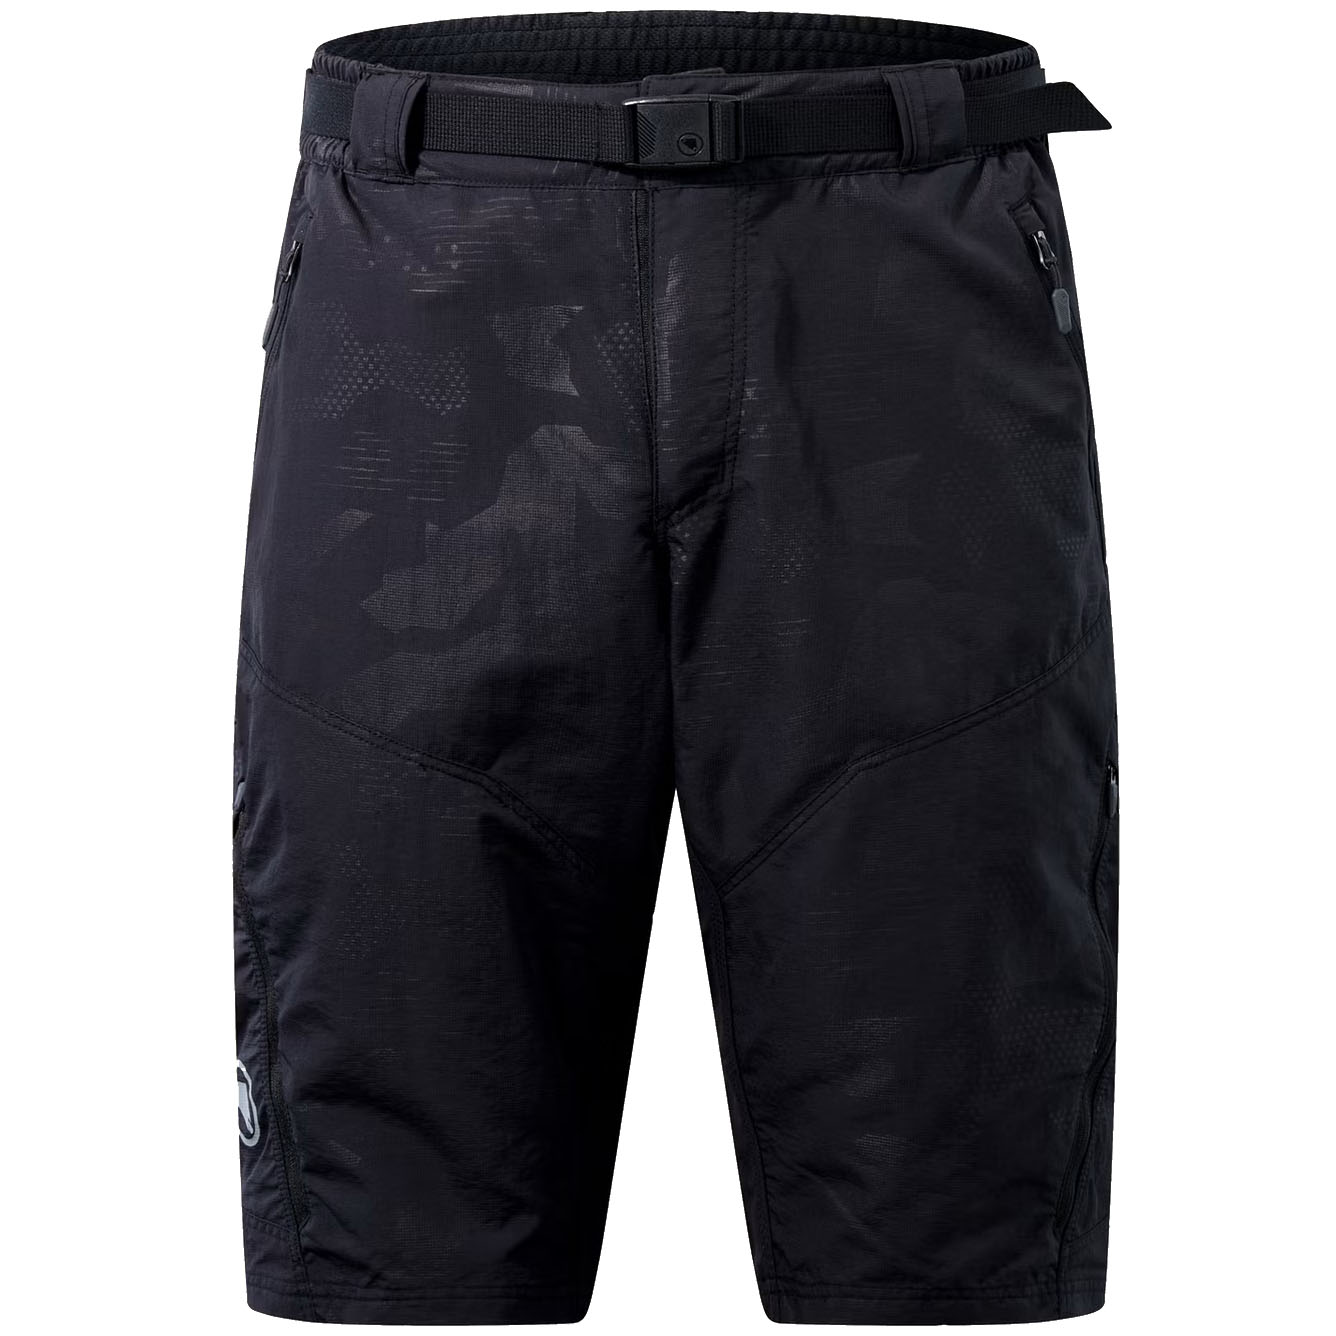 Productfoto van Endura Hummvee Shorts Heren - dark camouflage